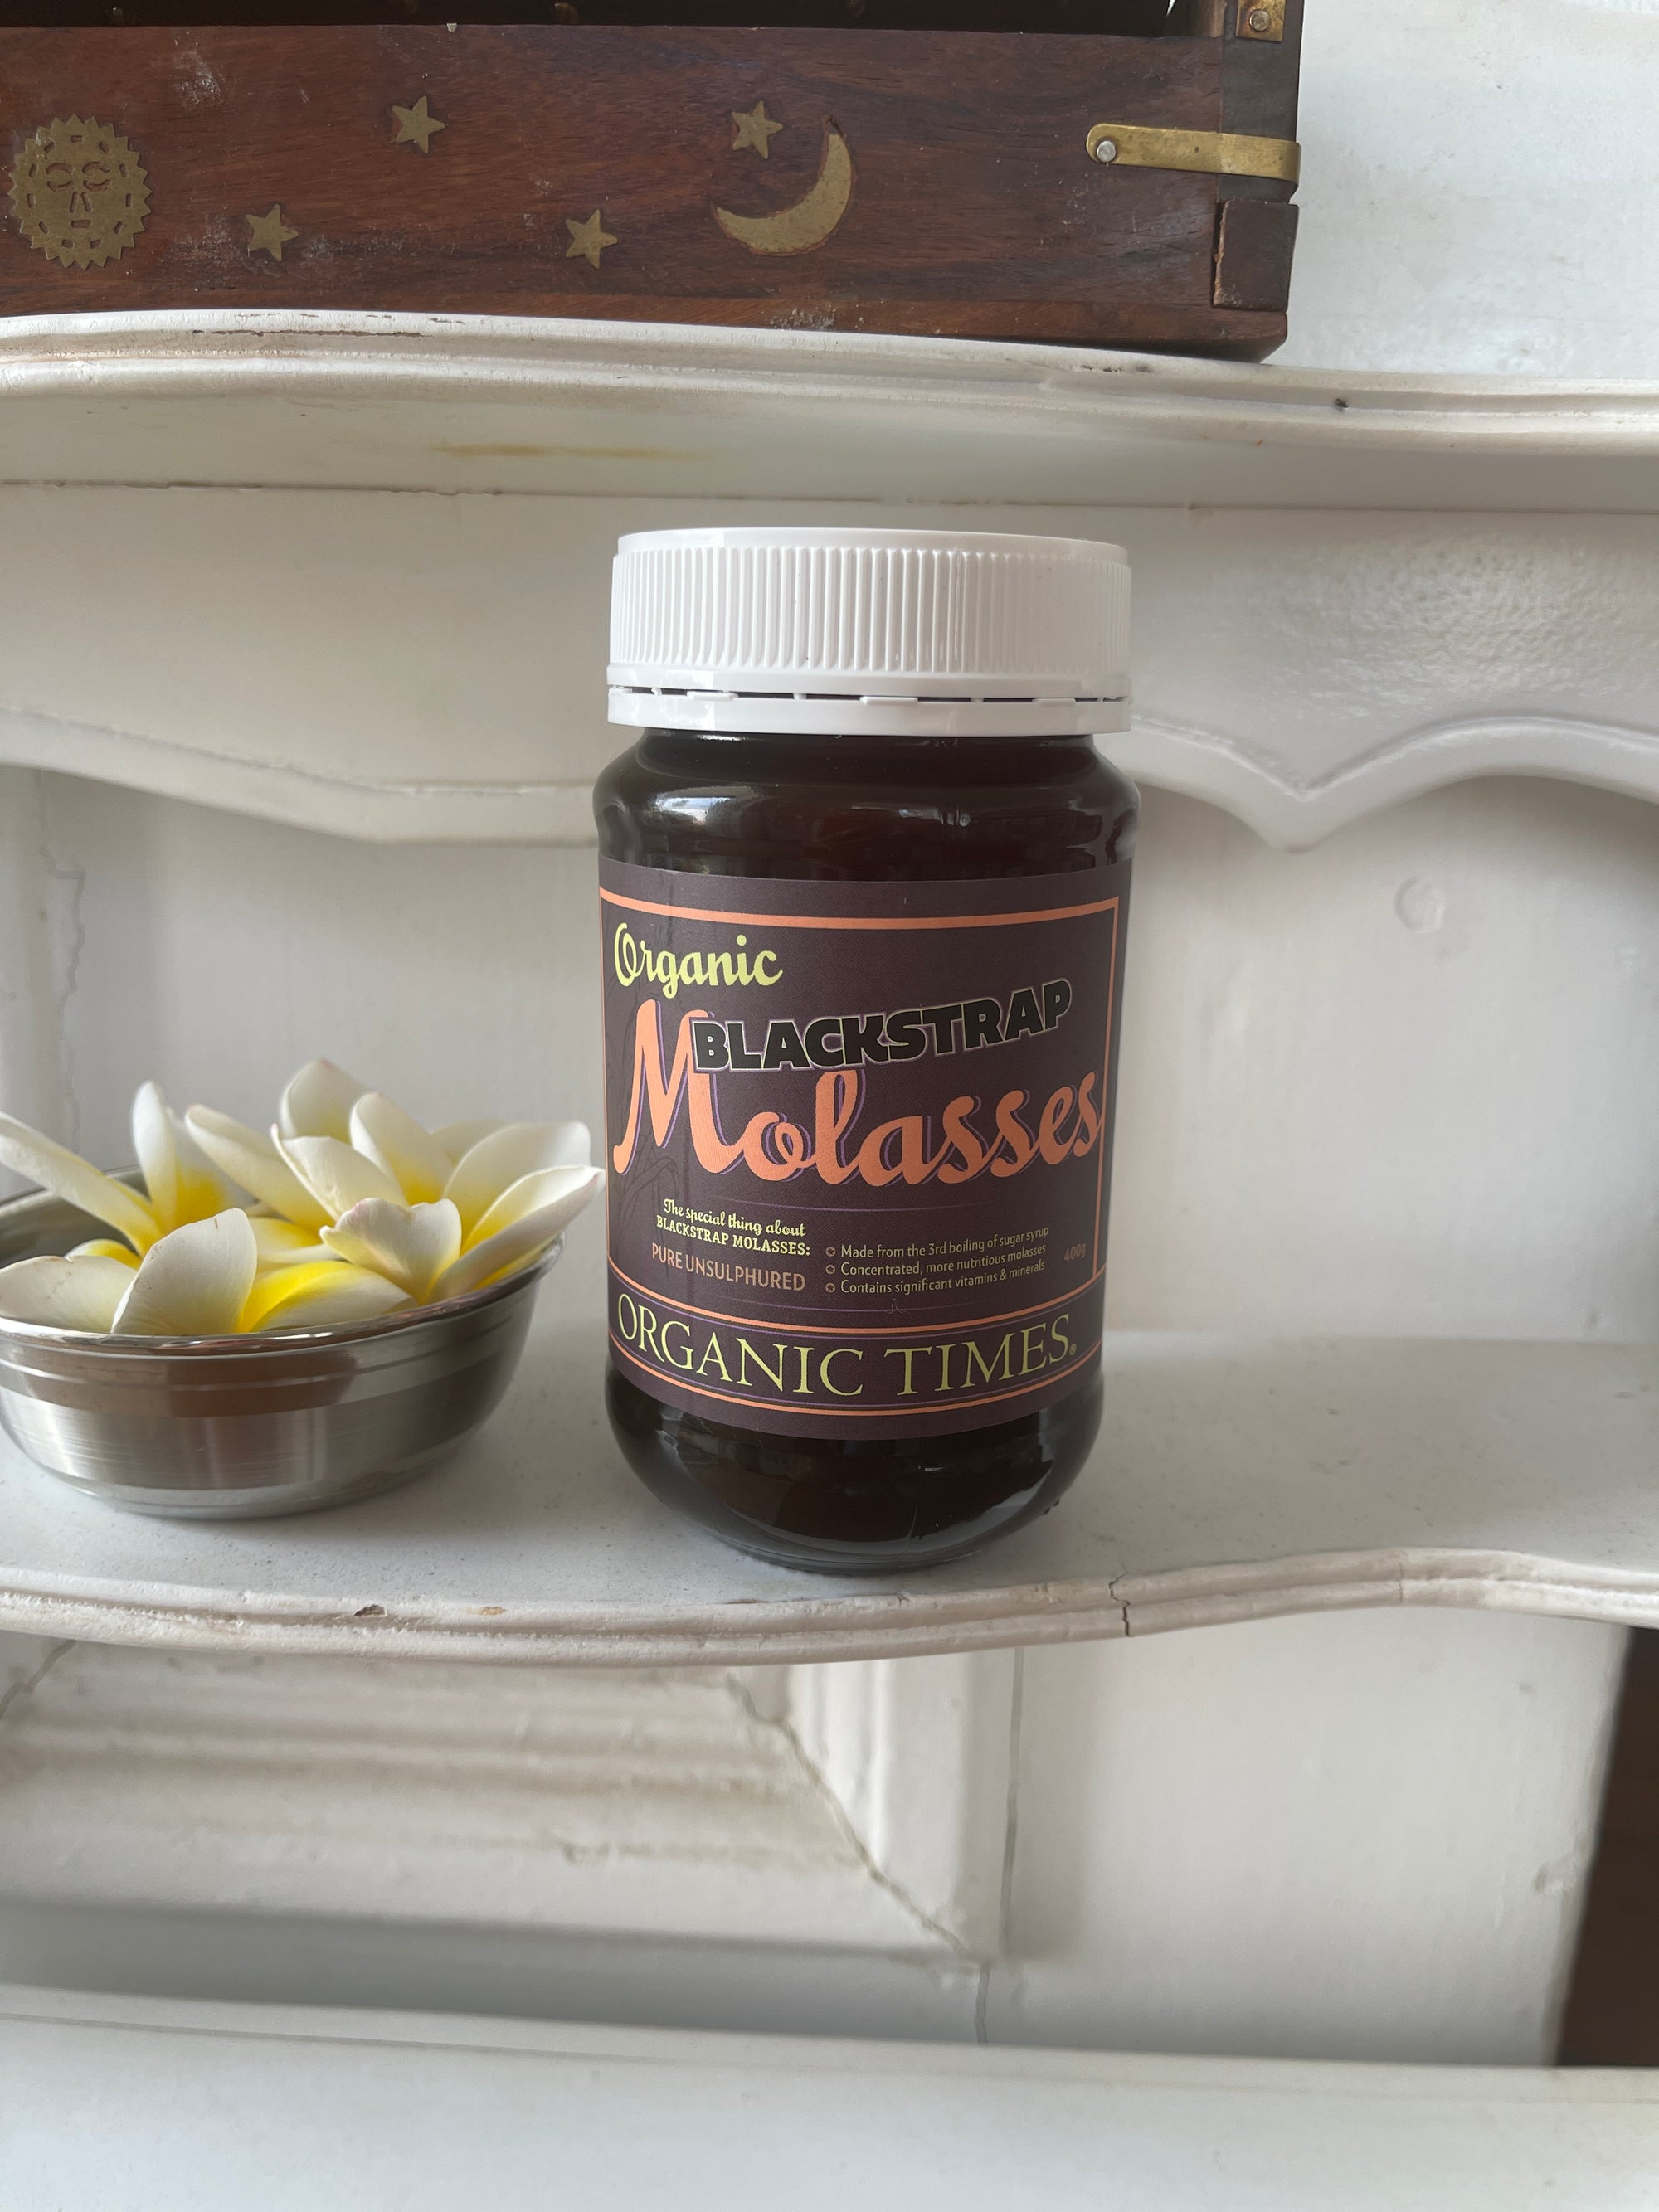 Organic Times Blackstrap Molasses 400g